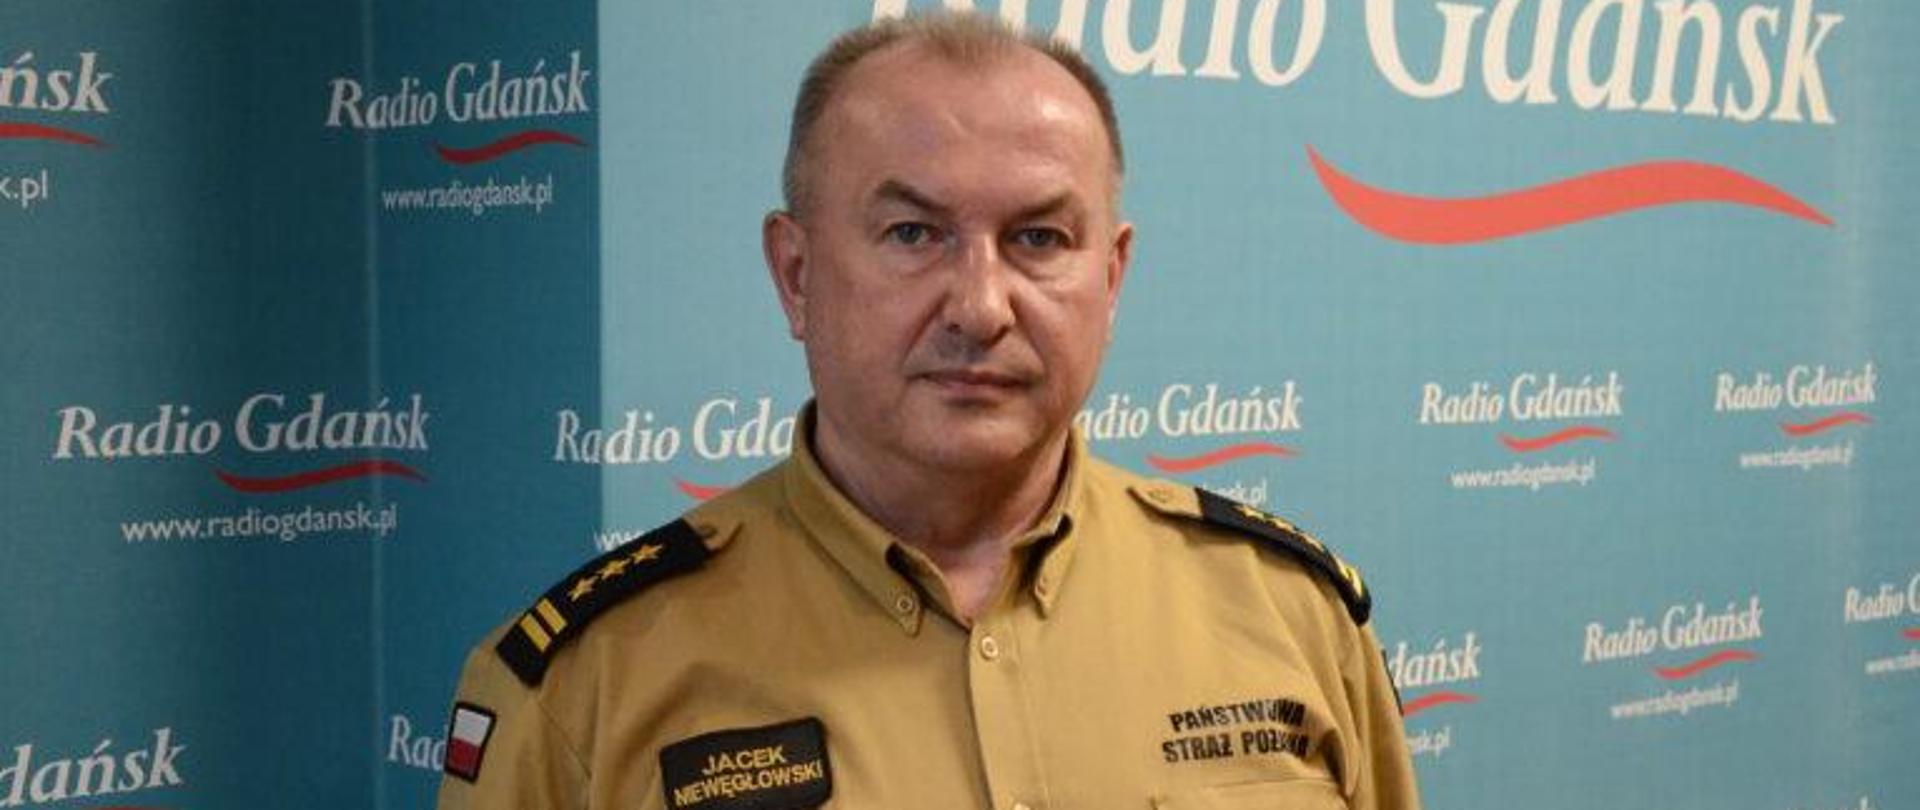 Mężczyzna w mundurze musztardowym stoi na tle napisu Radio Gdańsk.